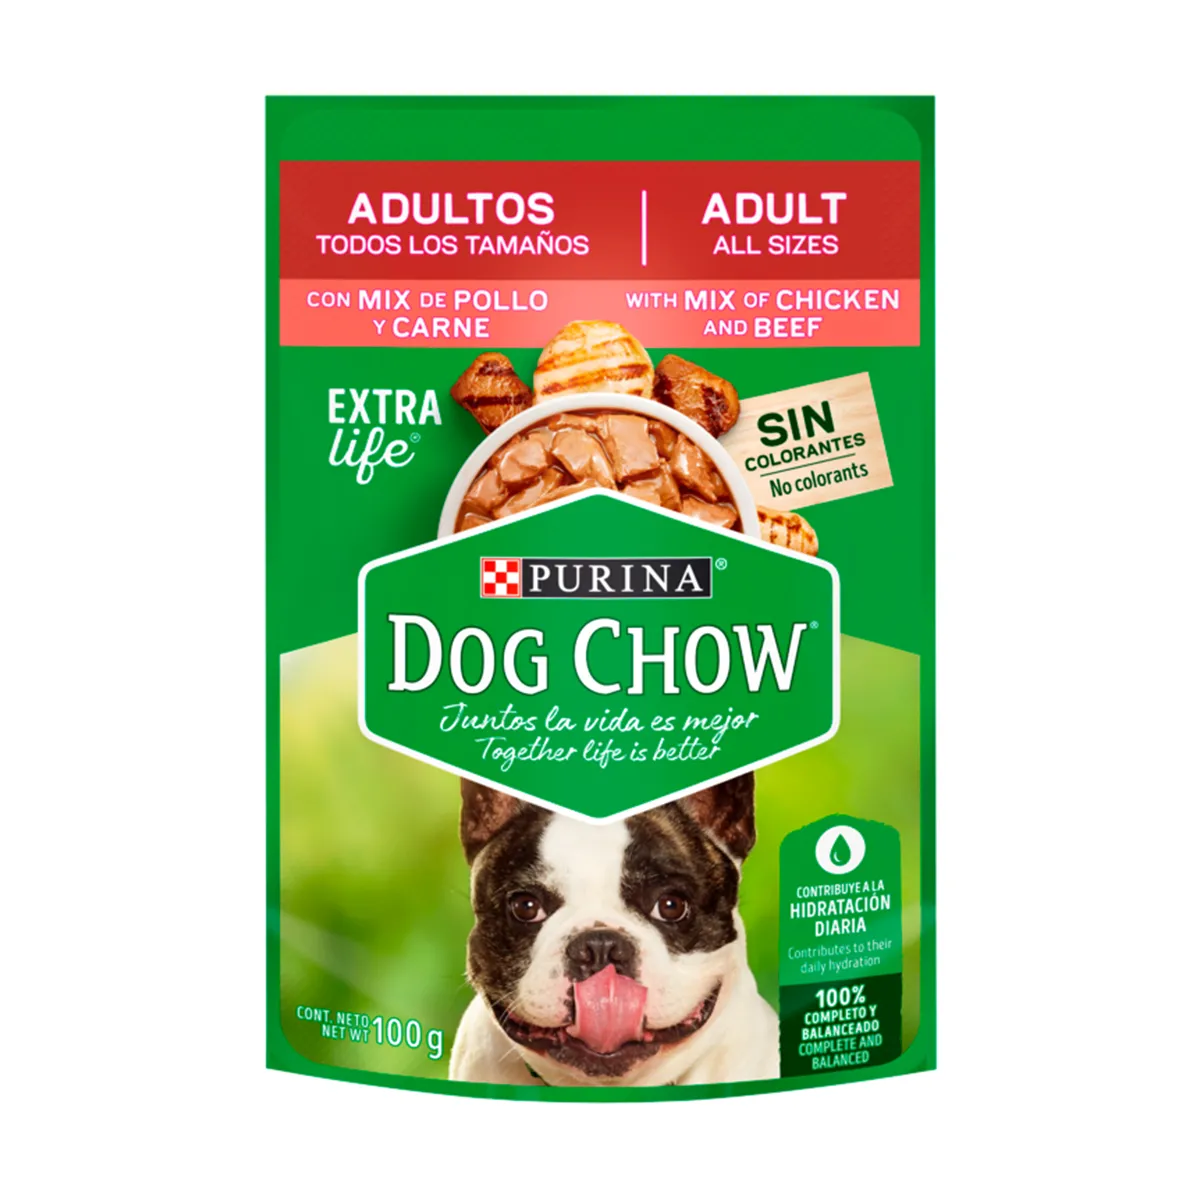 purina-dog-chow-alimento-humedo-todos-los-tamanos-mix-de-pollo-y-carne-nutrion-animal-tienda-online-nutricion-animal-tienda.